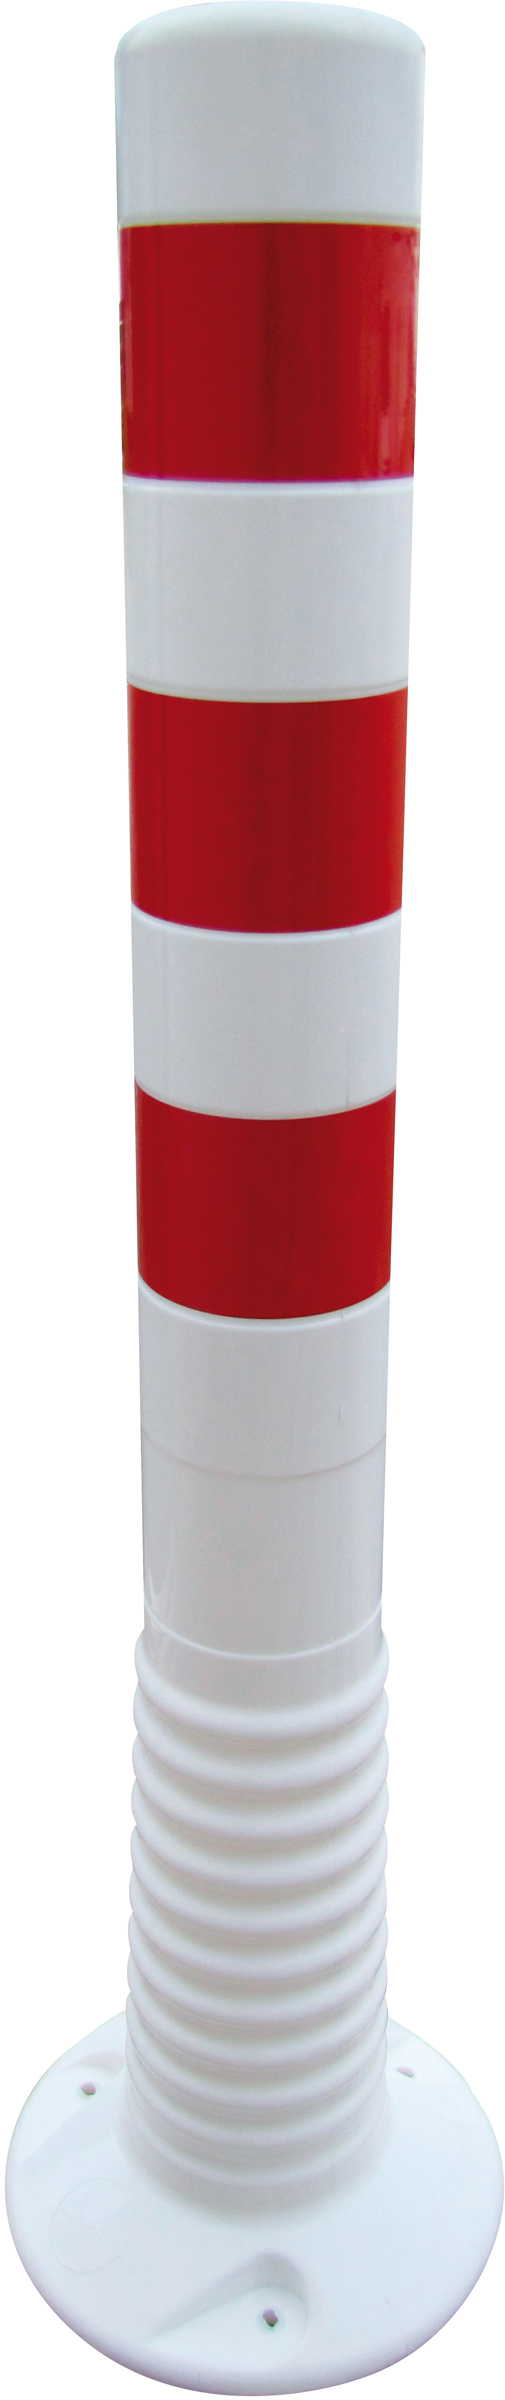 Schake Kunststoffpfosten weiß | rot - 750 mm